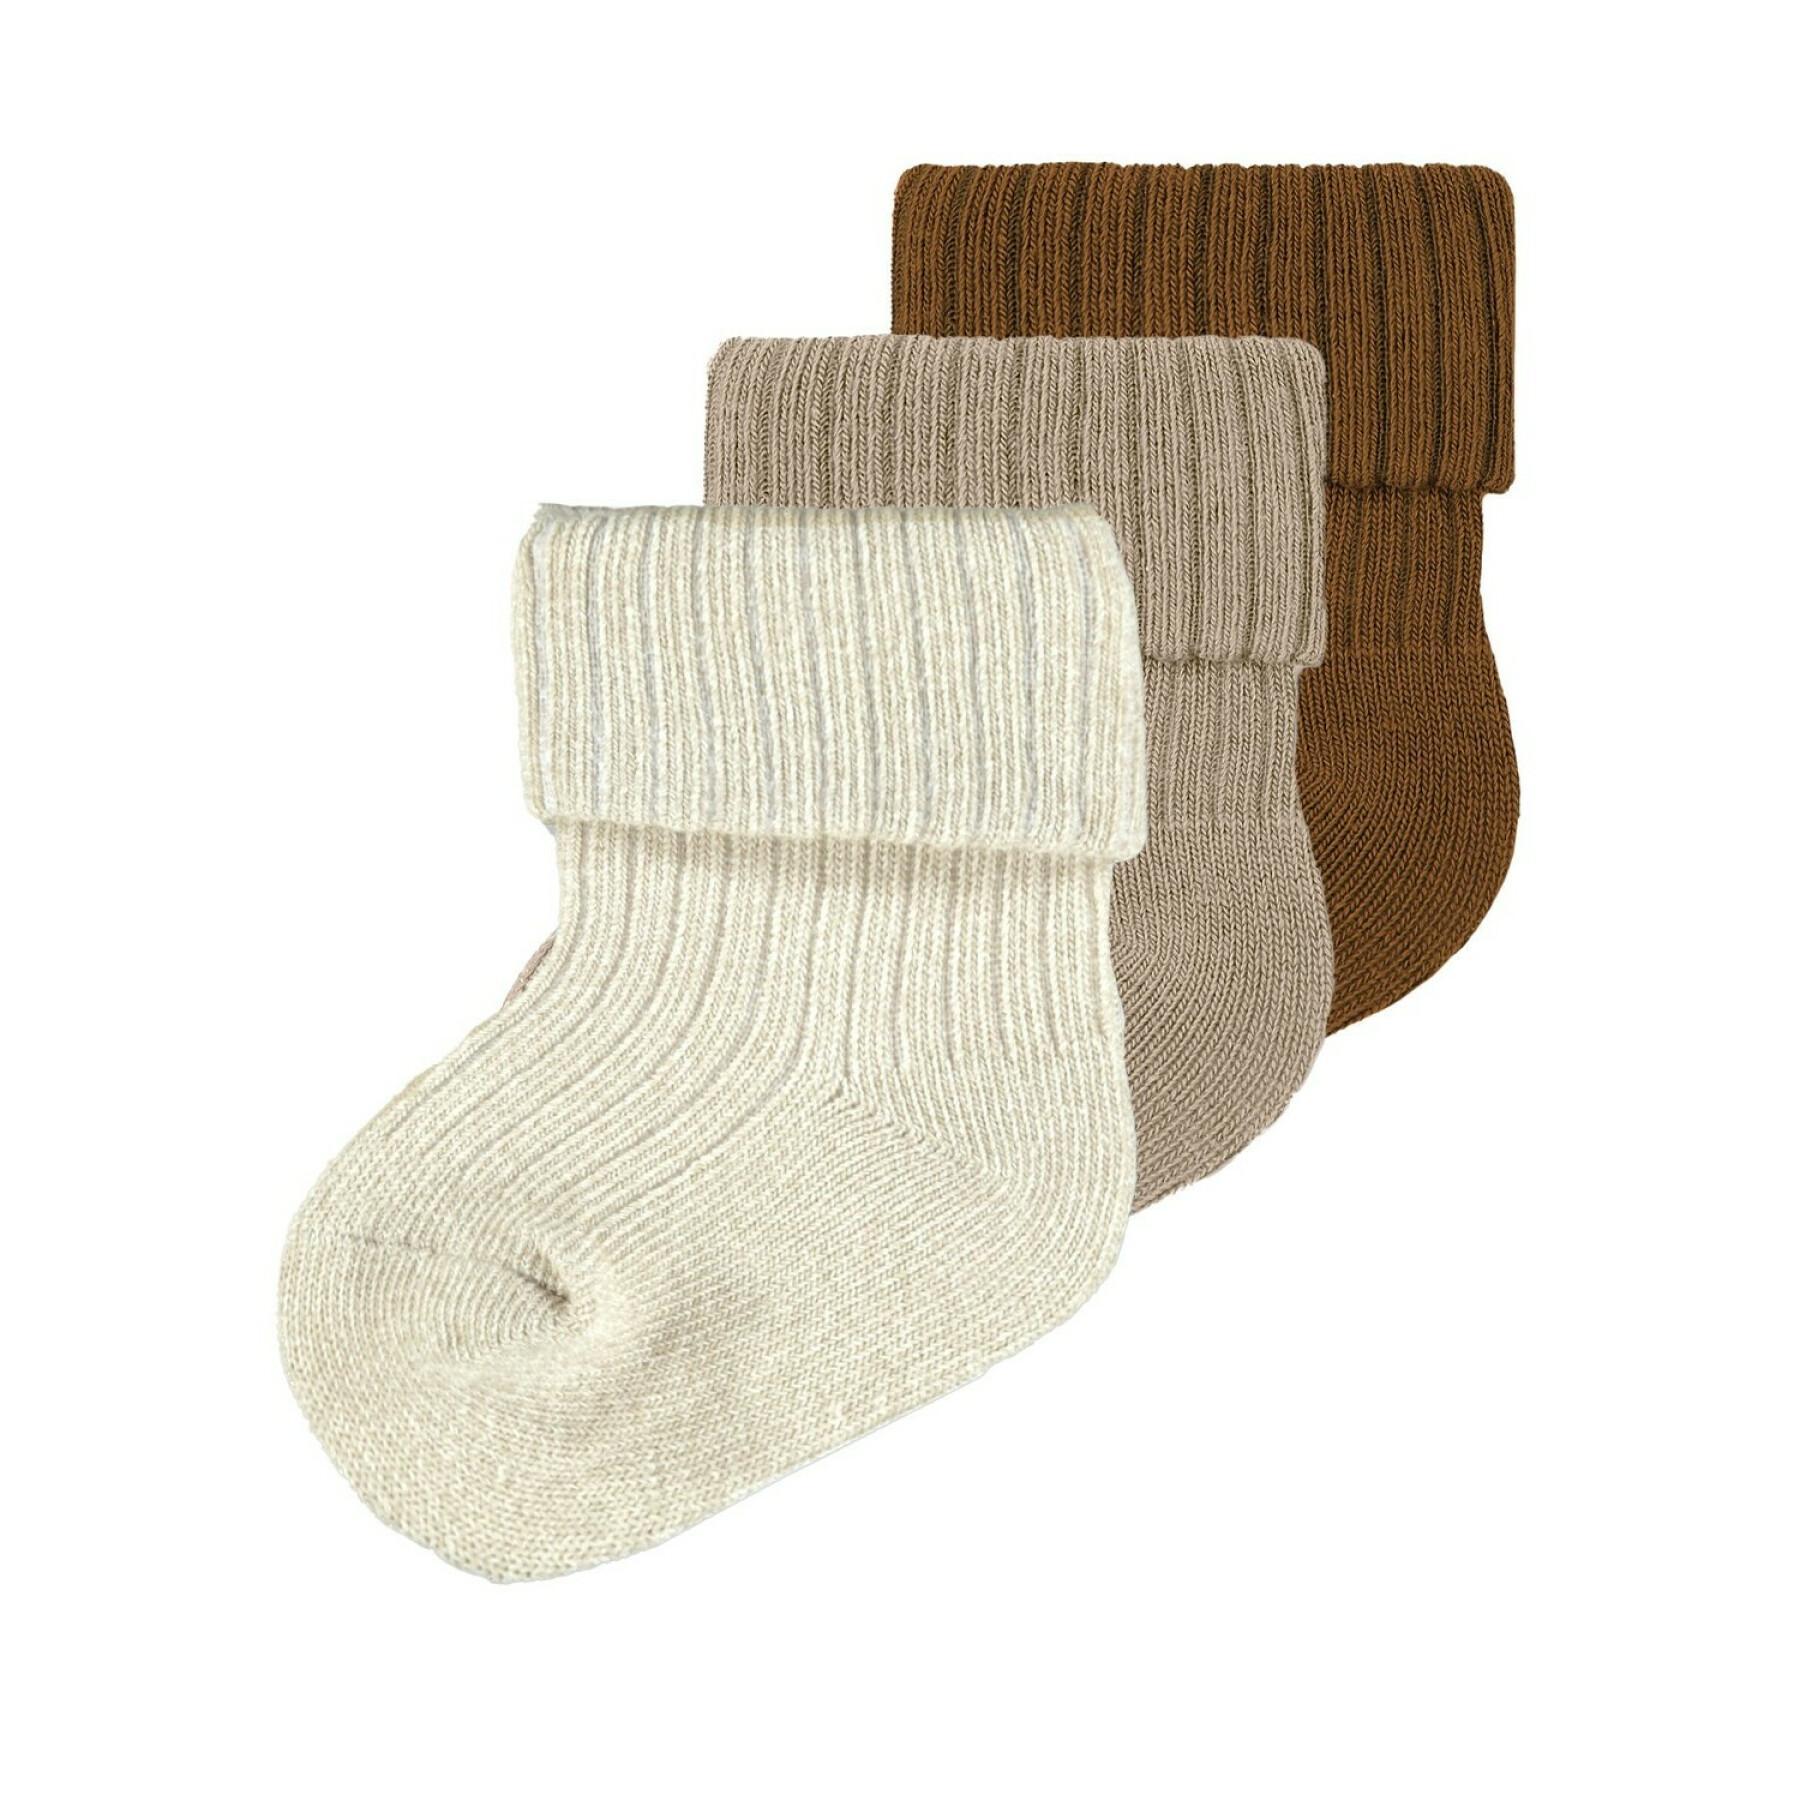 Confezione di 3 calzini per bambini Name it Storm Socks